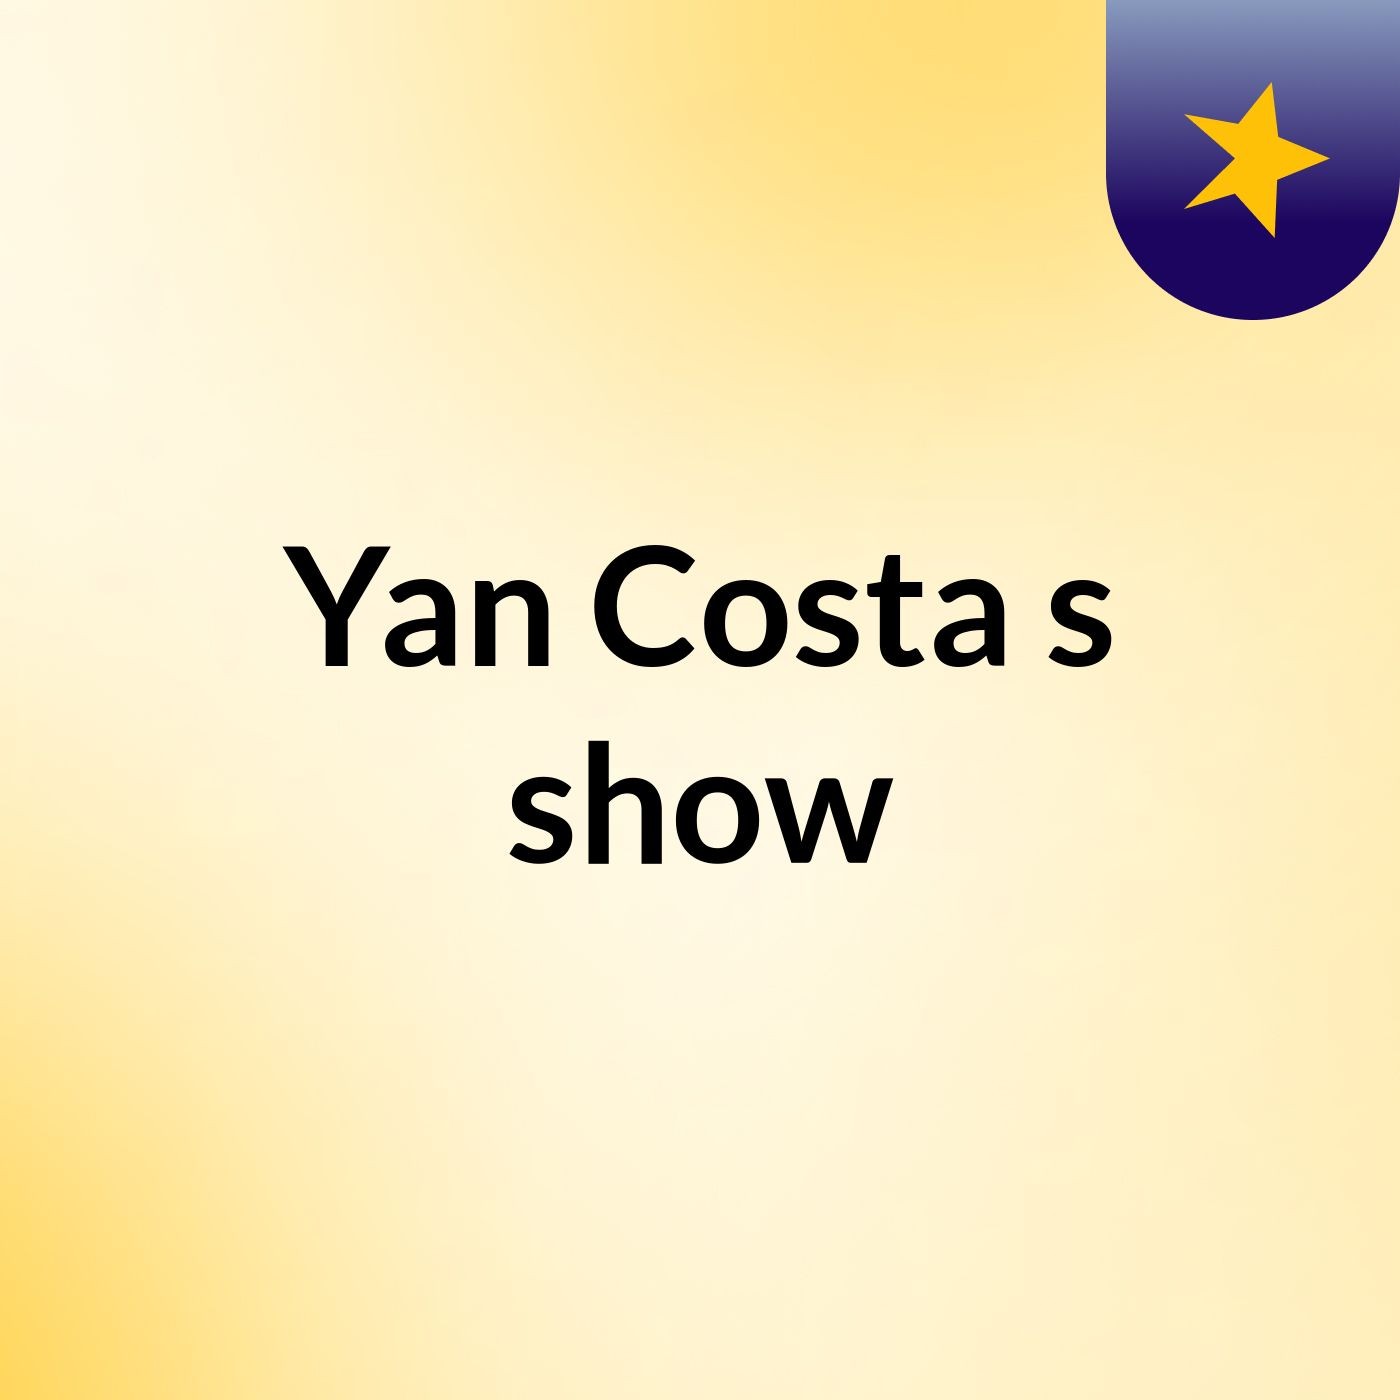 Yan Costa's show